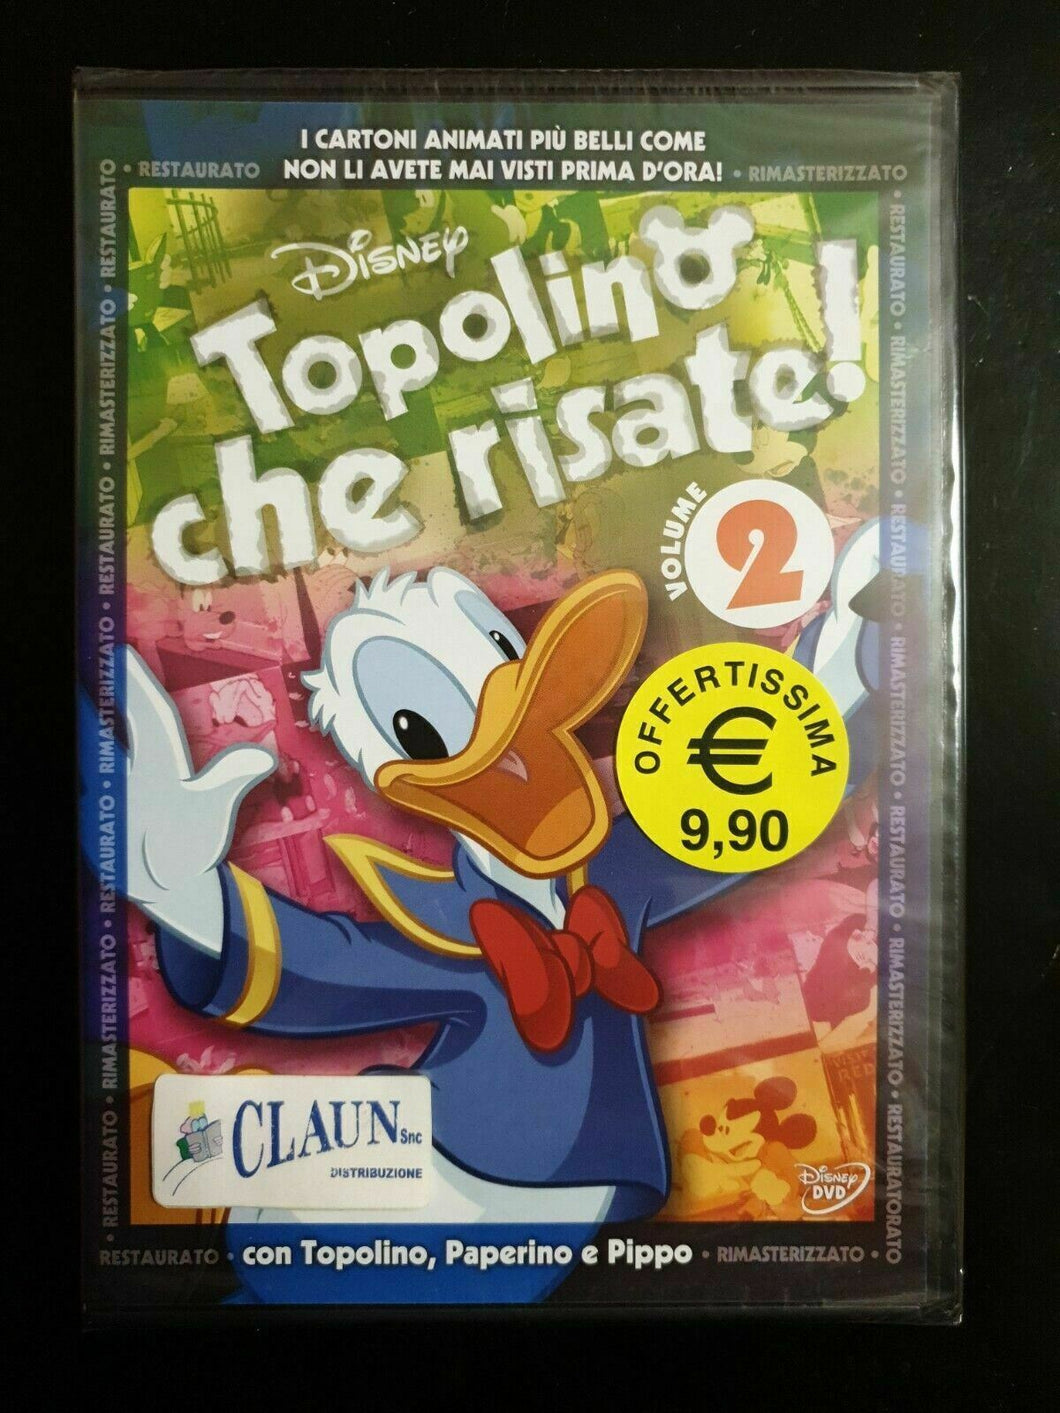 Topolino che risate! Vol. 2 W.Disney Rimasterizzato, Restaurato DVD Nuovo